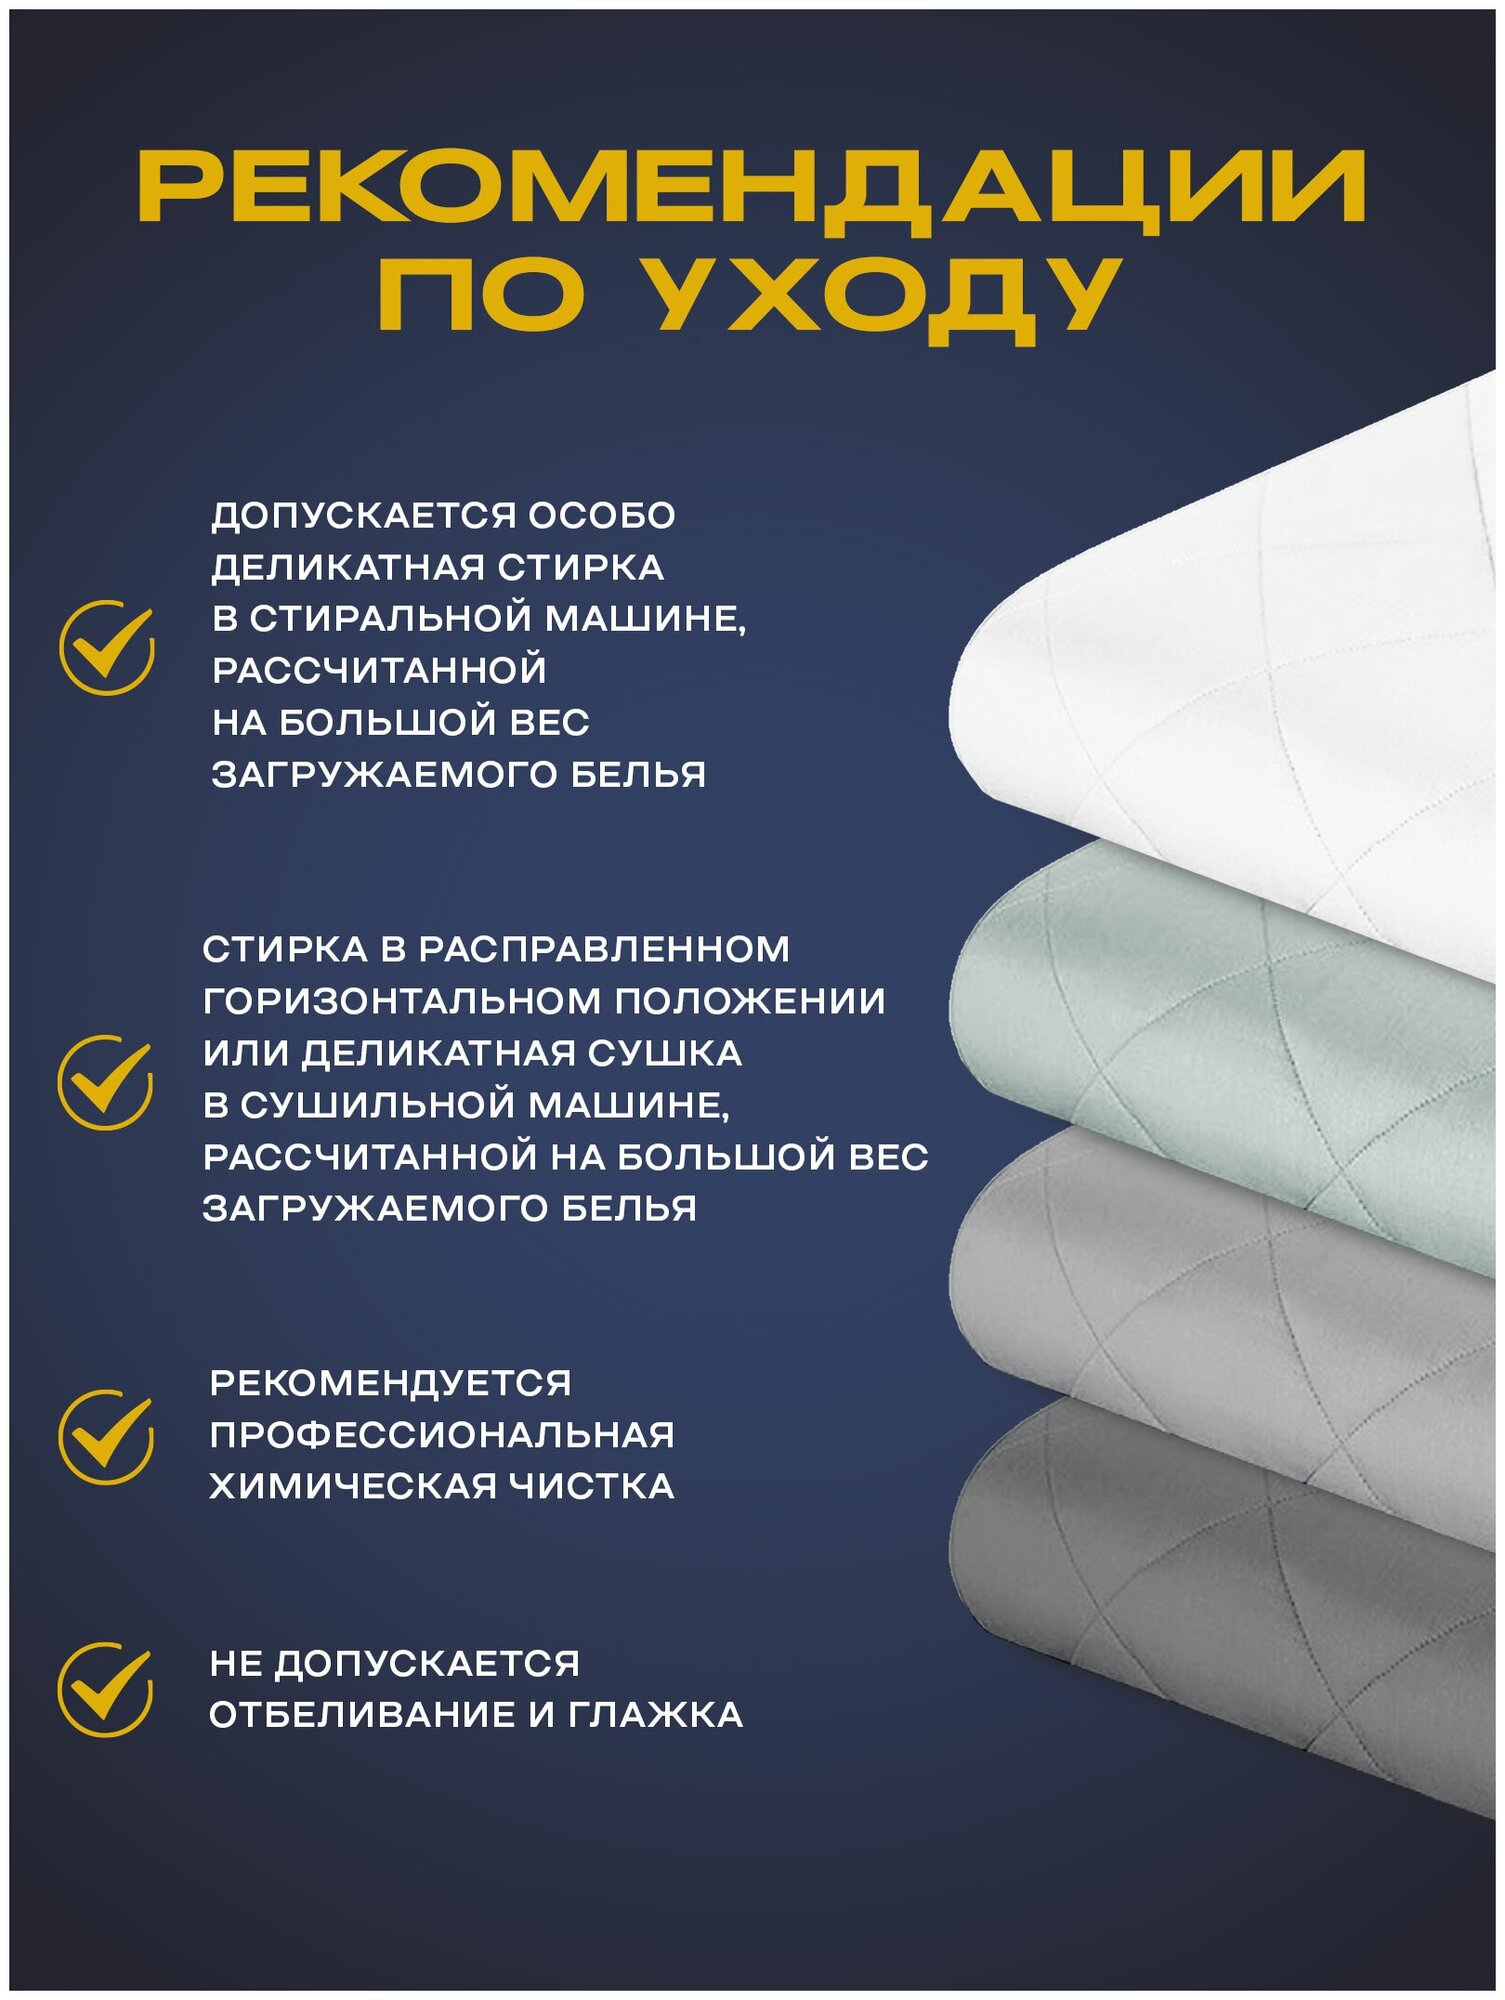 Утяжеленное одеяло Gravity (Гравити) Wellina, 140x205 см. белое 8 кг./ Сенсорное одеяло Gravity 140 x 205 см. / Тяжелое одеяло 8 кг. - фотография № 12